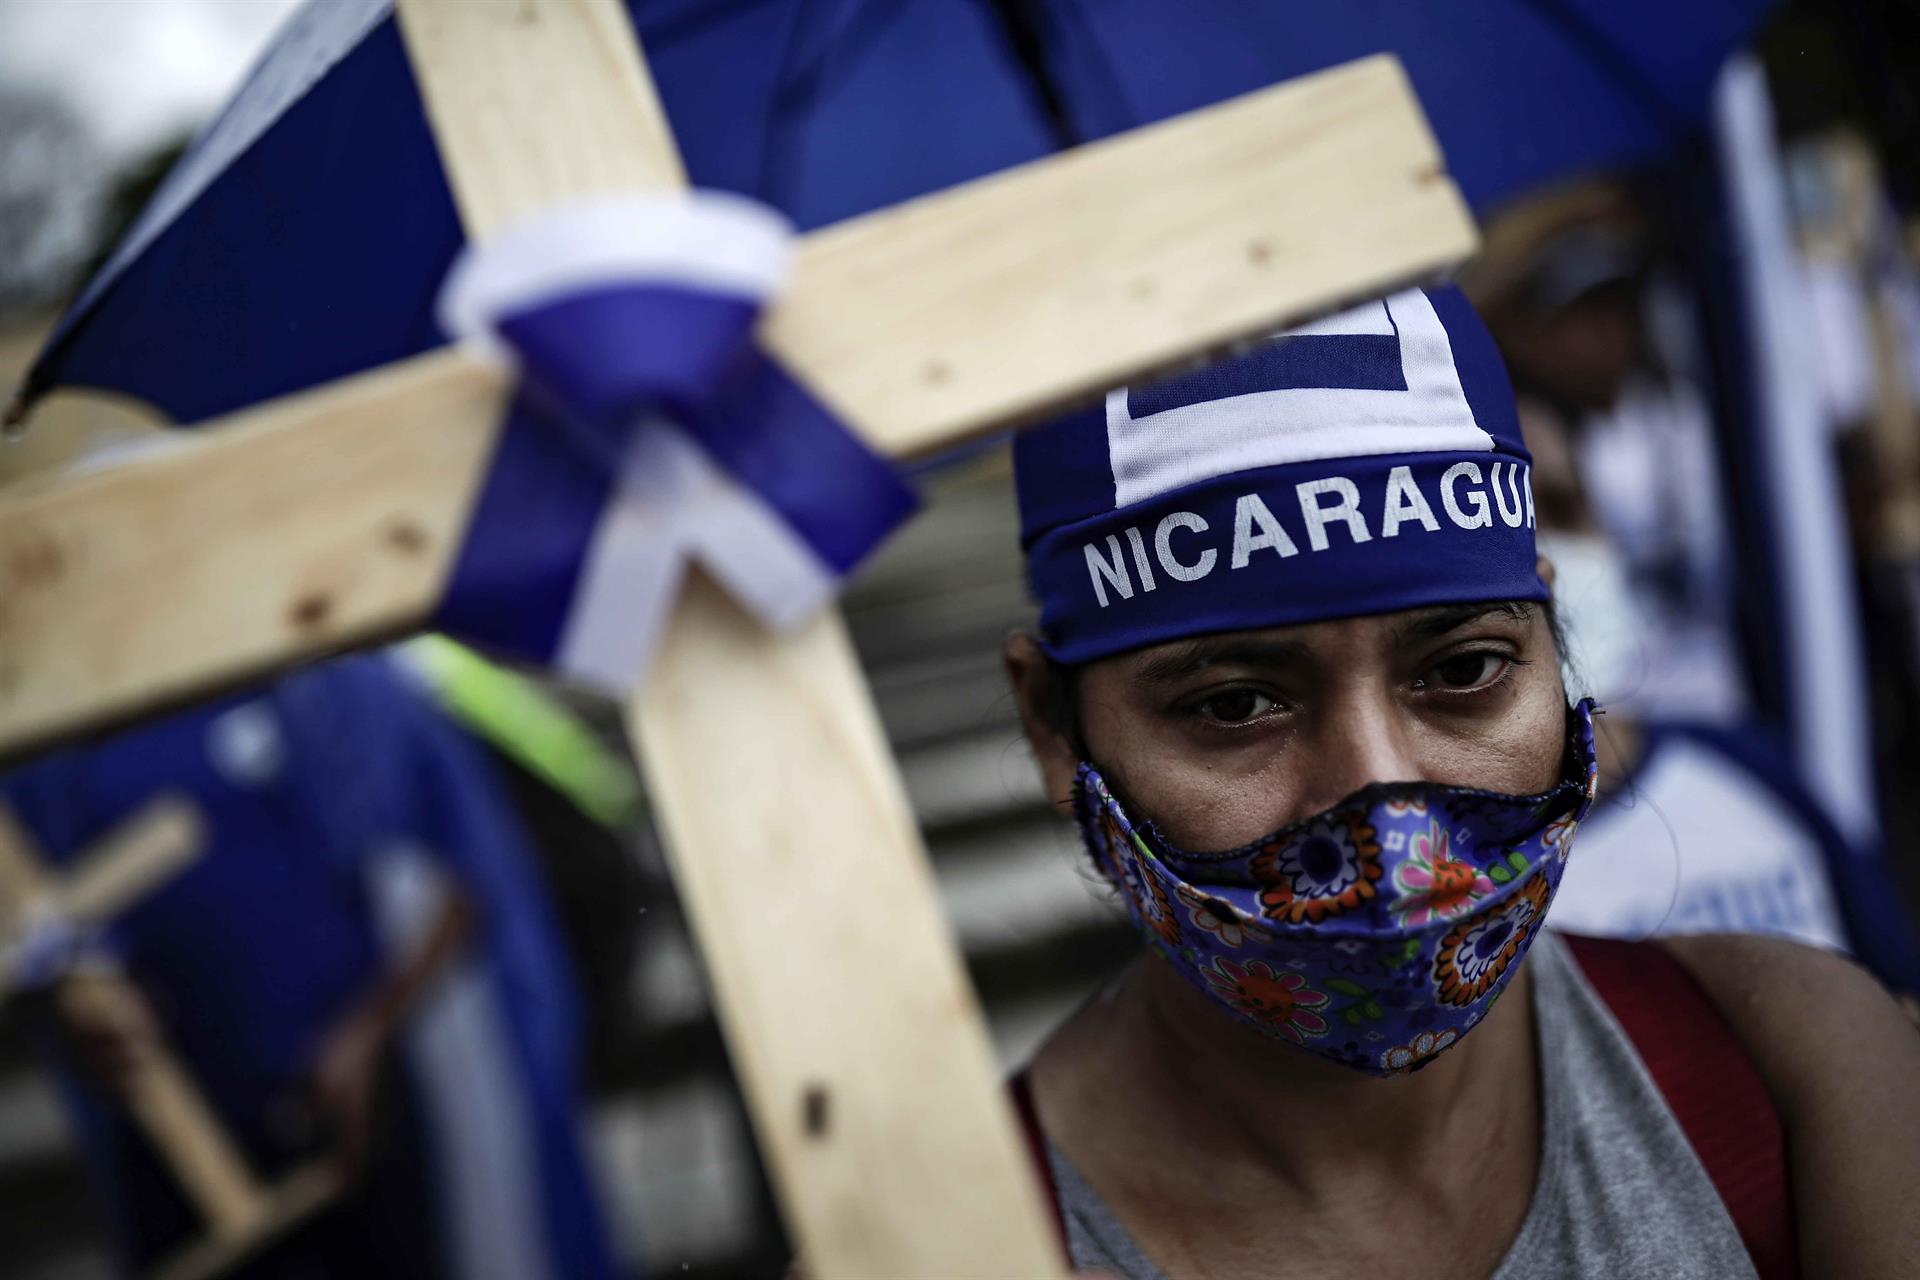 Exiliados demandan a la OEA declarar ilegítimo al régimen Ortega-Murillo tras “farsa electoral”